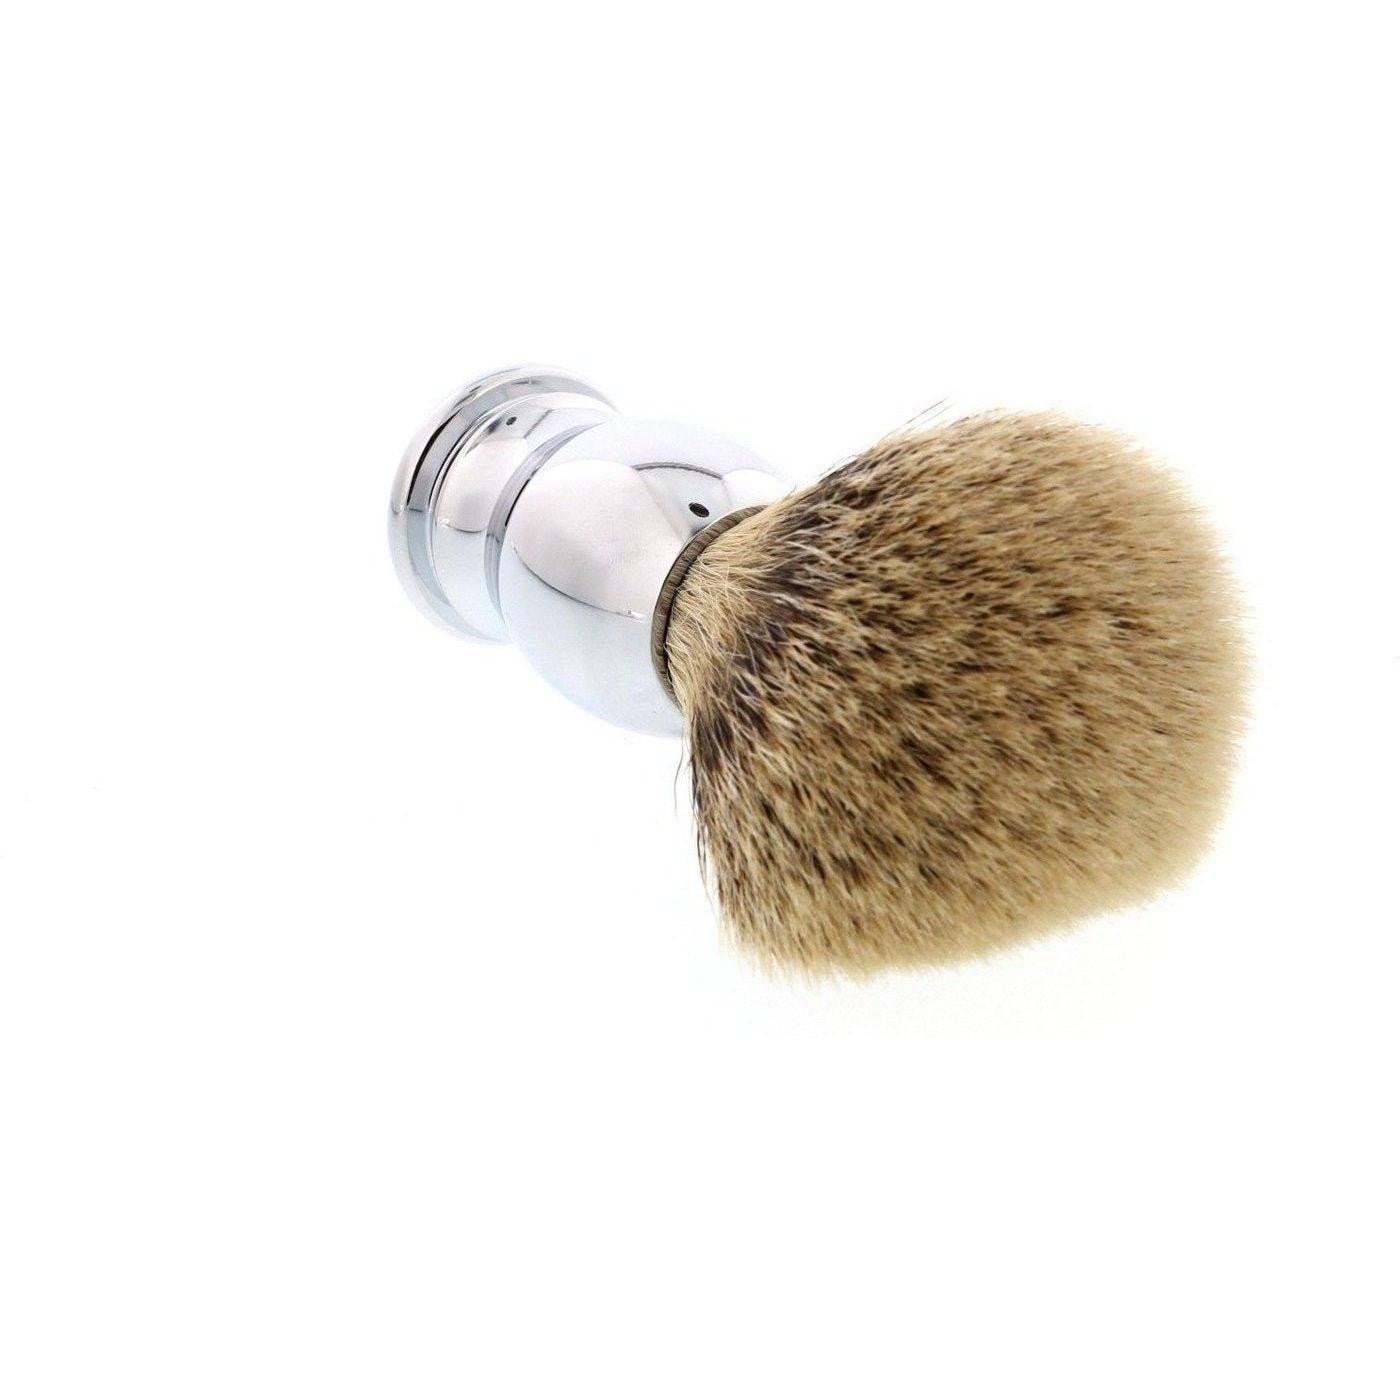 Product image 2 for Parker CHST Silvertip Badger Shaving Brush, Chrome Handle